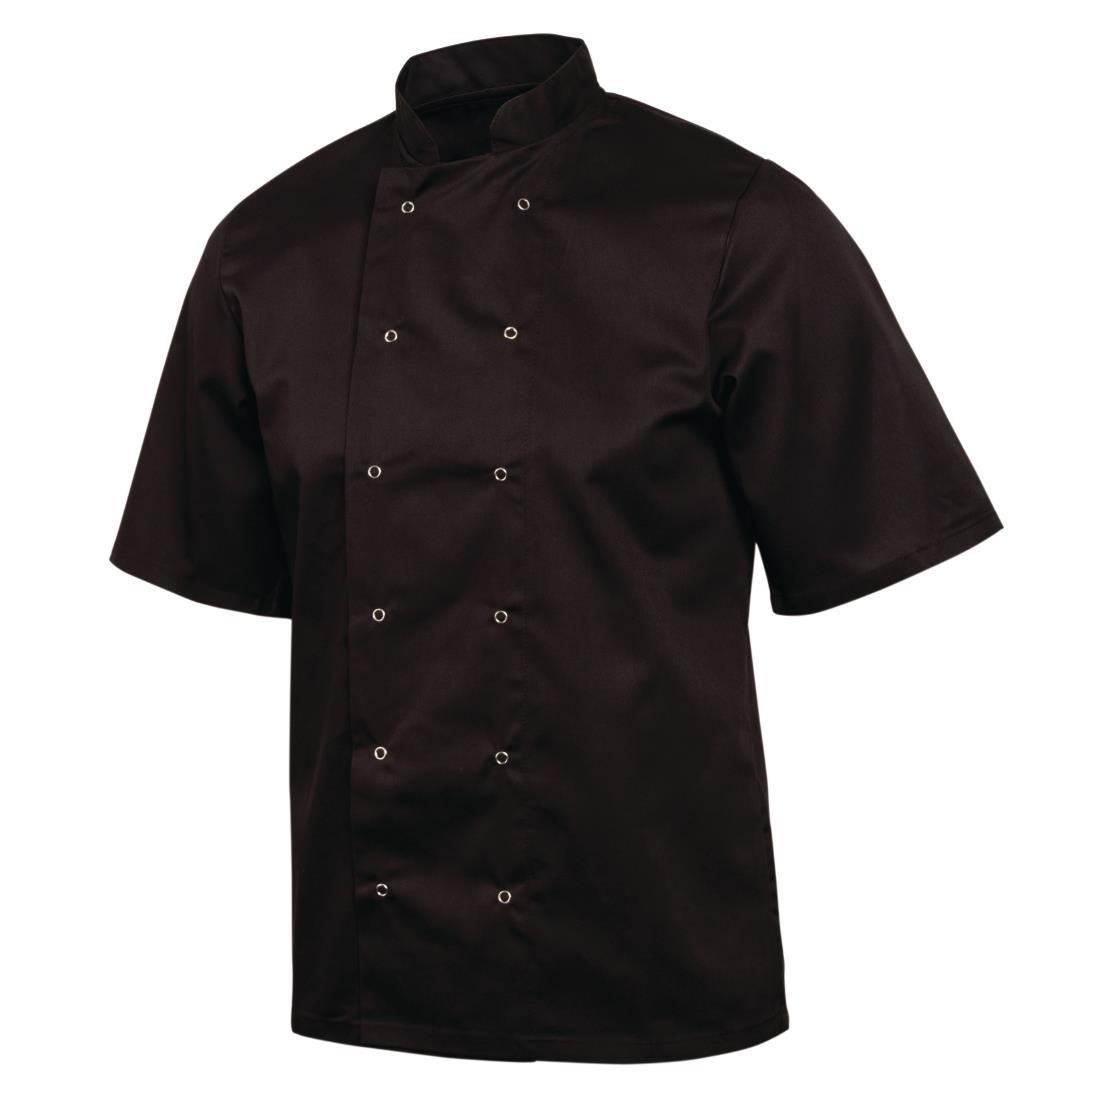 Whites Vegas Unisex Chefs Jacket Short Sleeve Black 5XL - A439-5XL  - 5